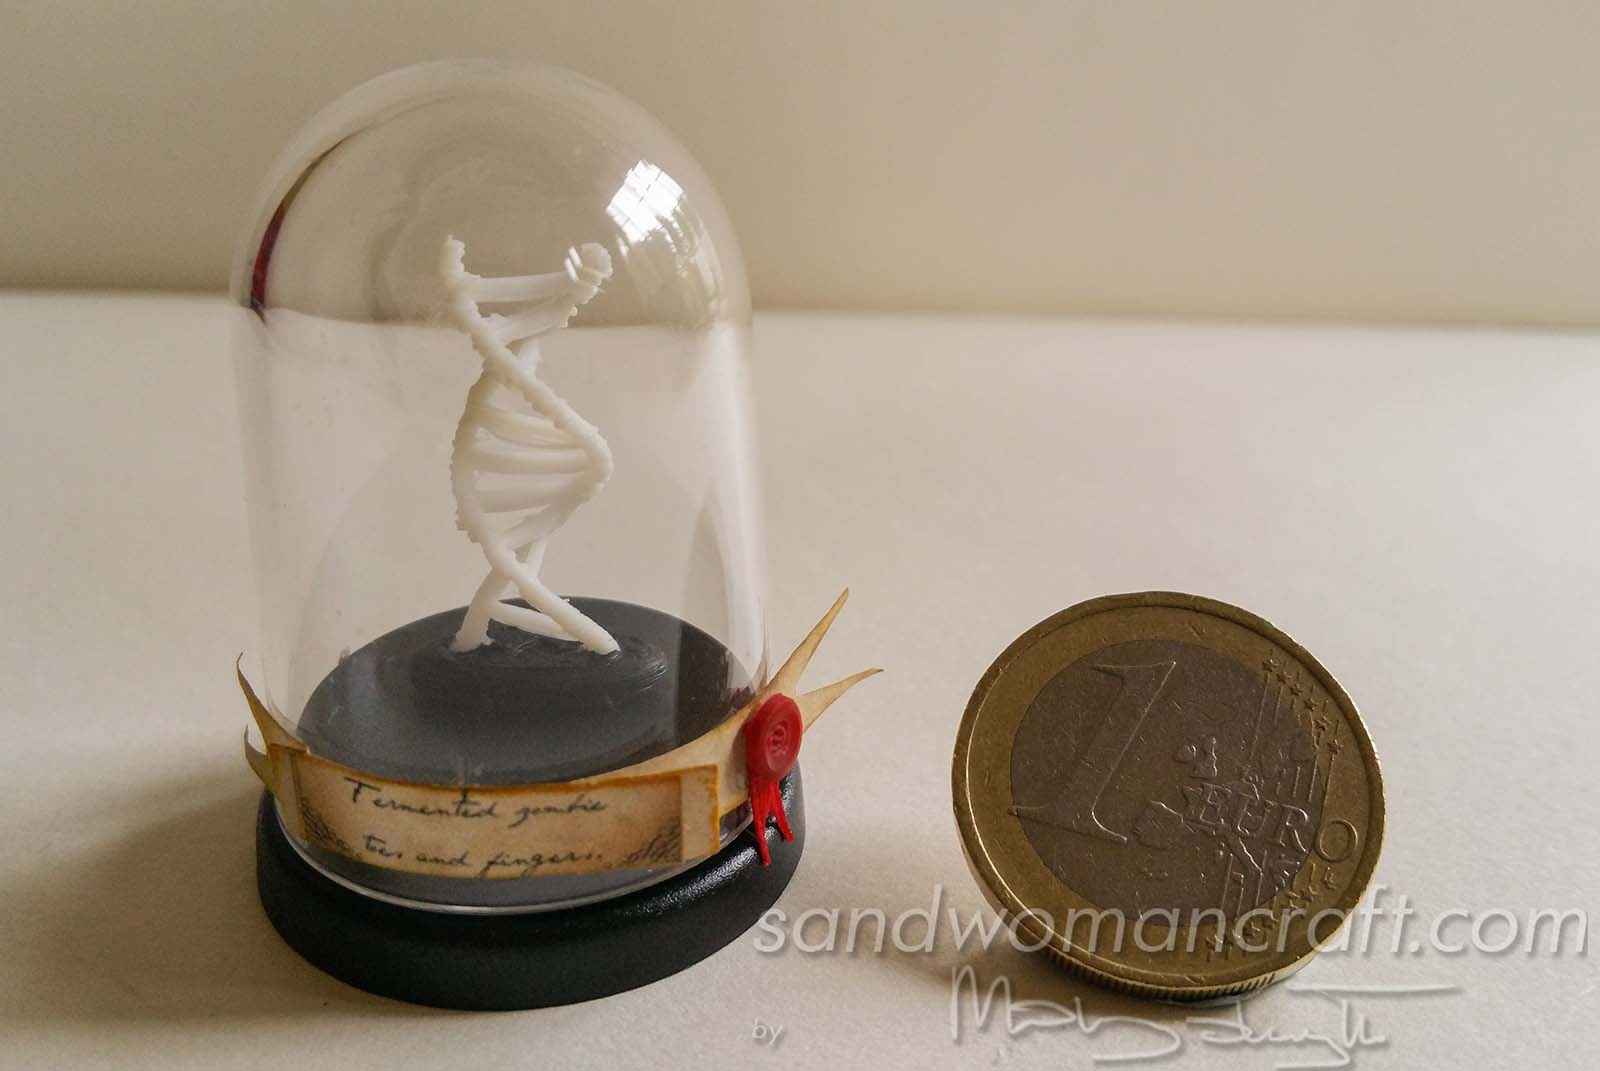 Miniature model of DNA under cloche mini dome